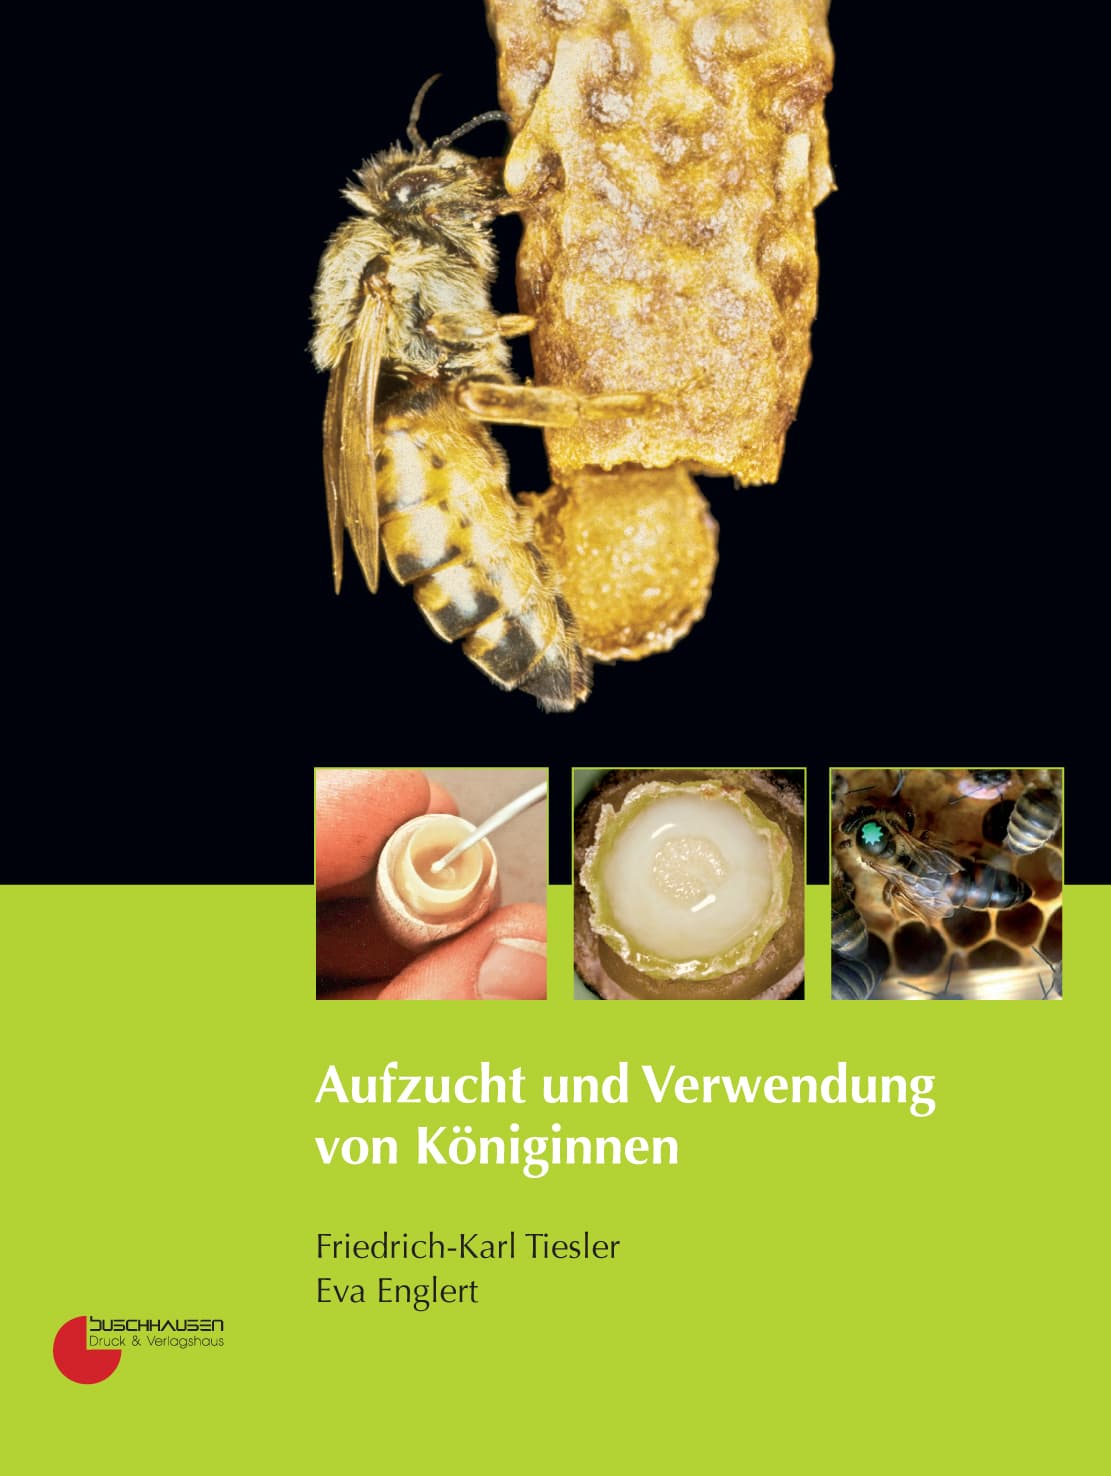 Aufzucht und Verwendung von Königinnen, F.-K. Tiesler, E.Englert, Buschhausen Verlag